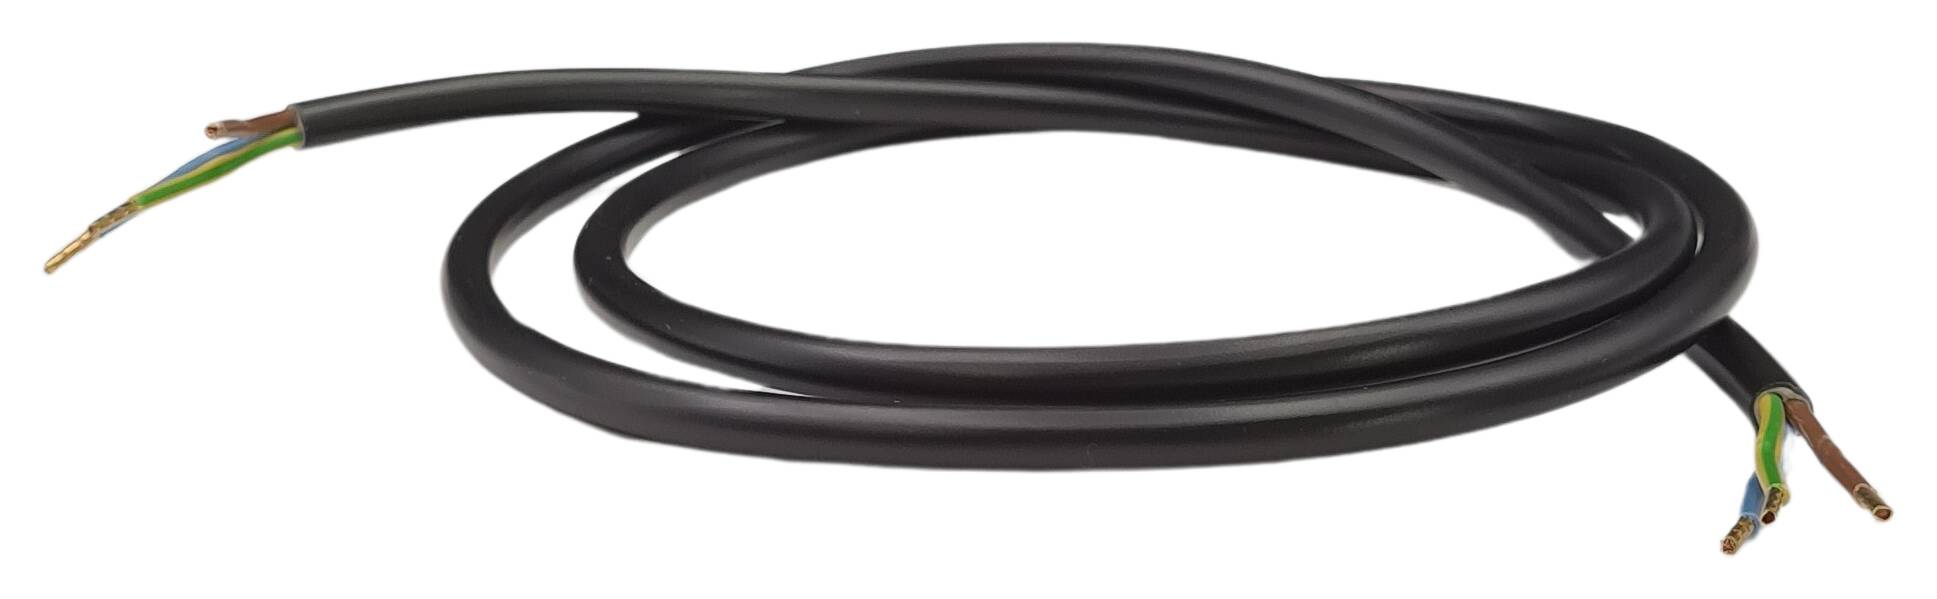 Kabel-Zuschnitt 3G 0,75 H03VV-F rund 1000 mm lg. beids. 30/07AE schwarz